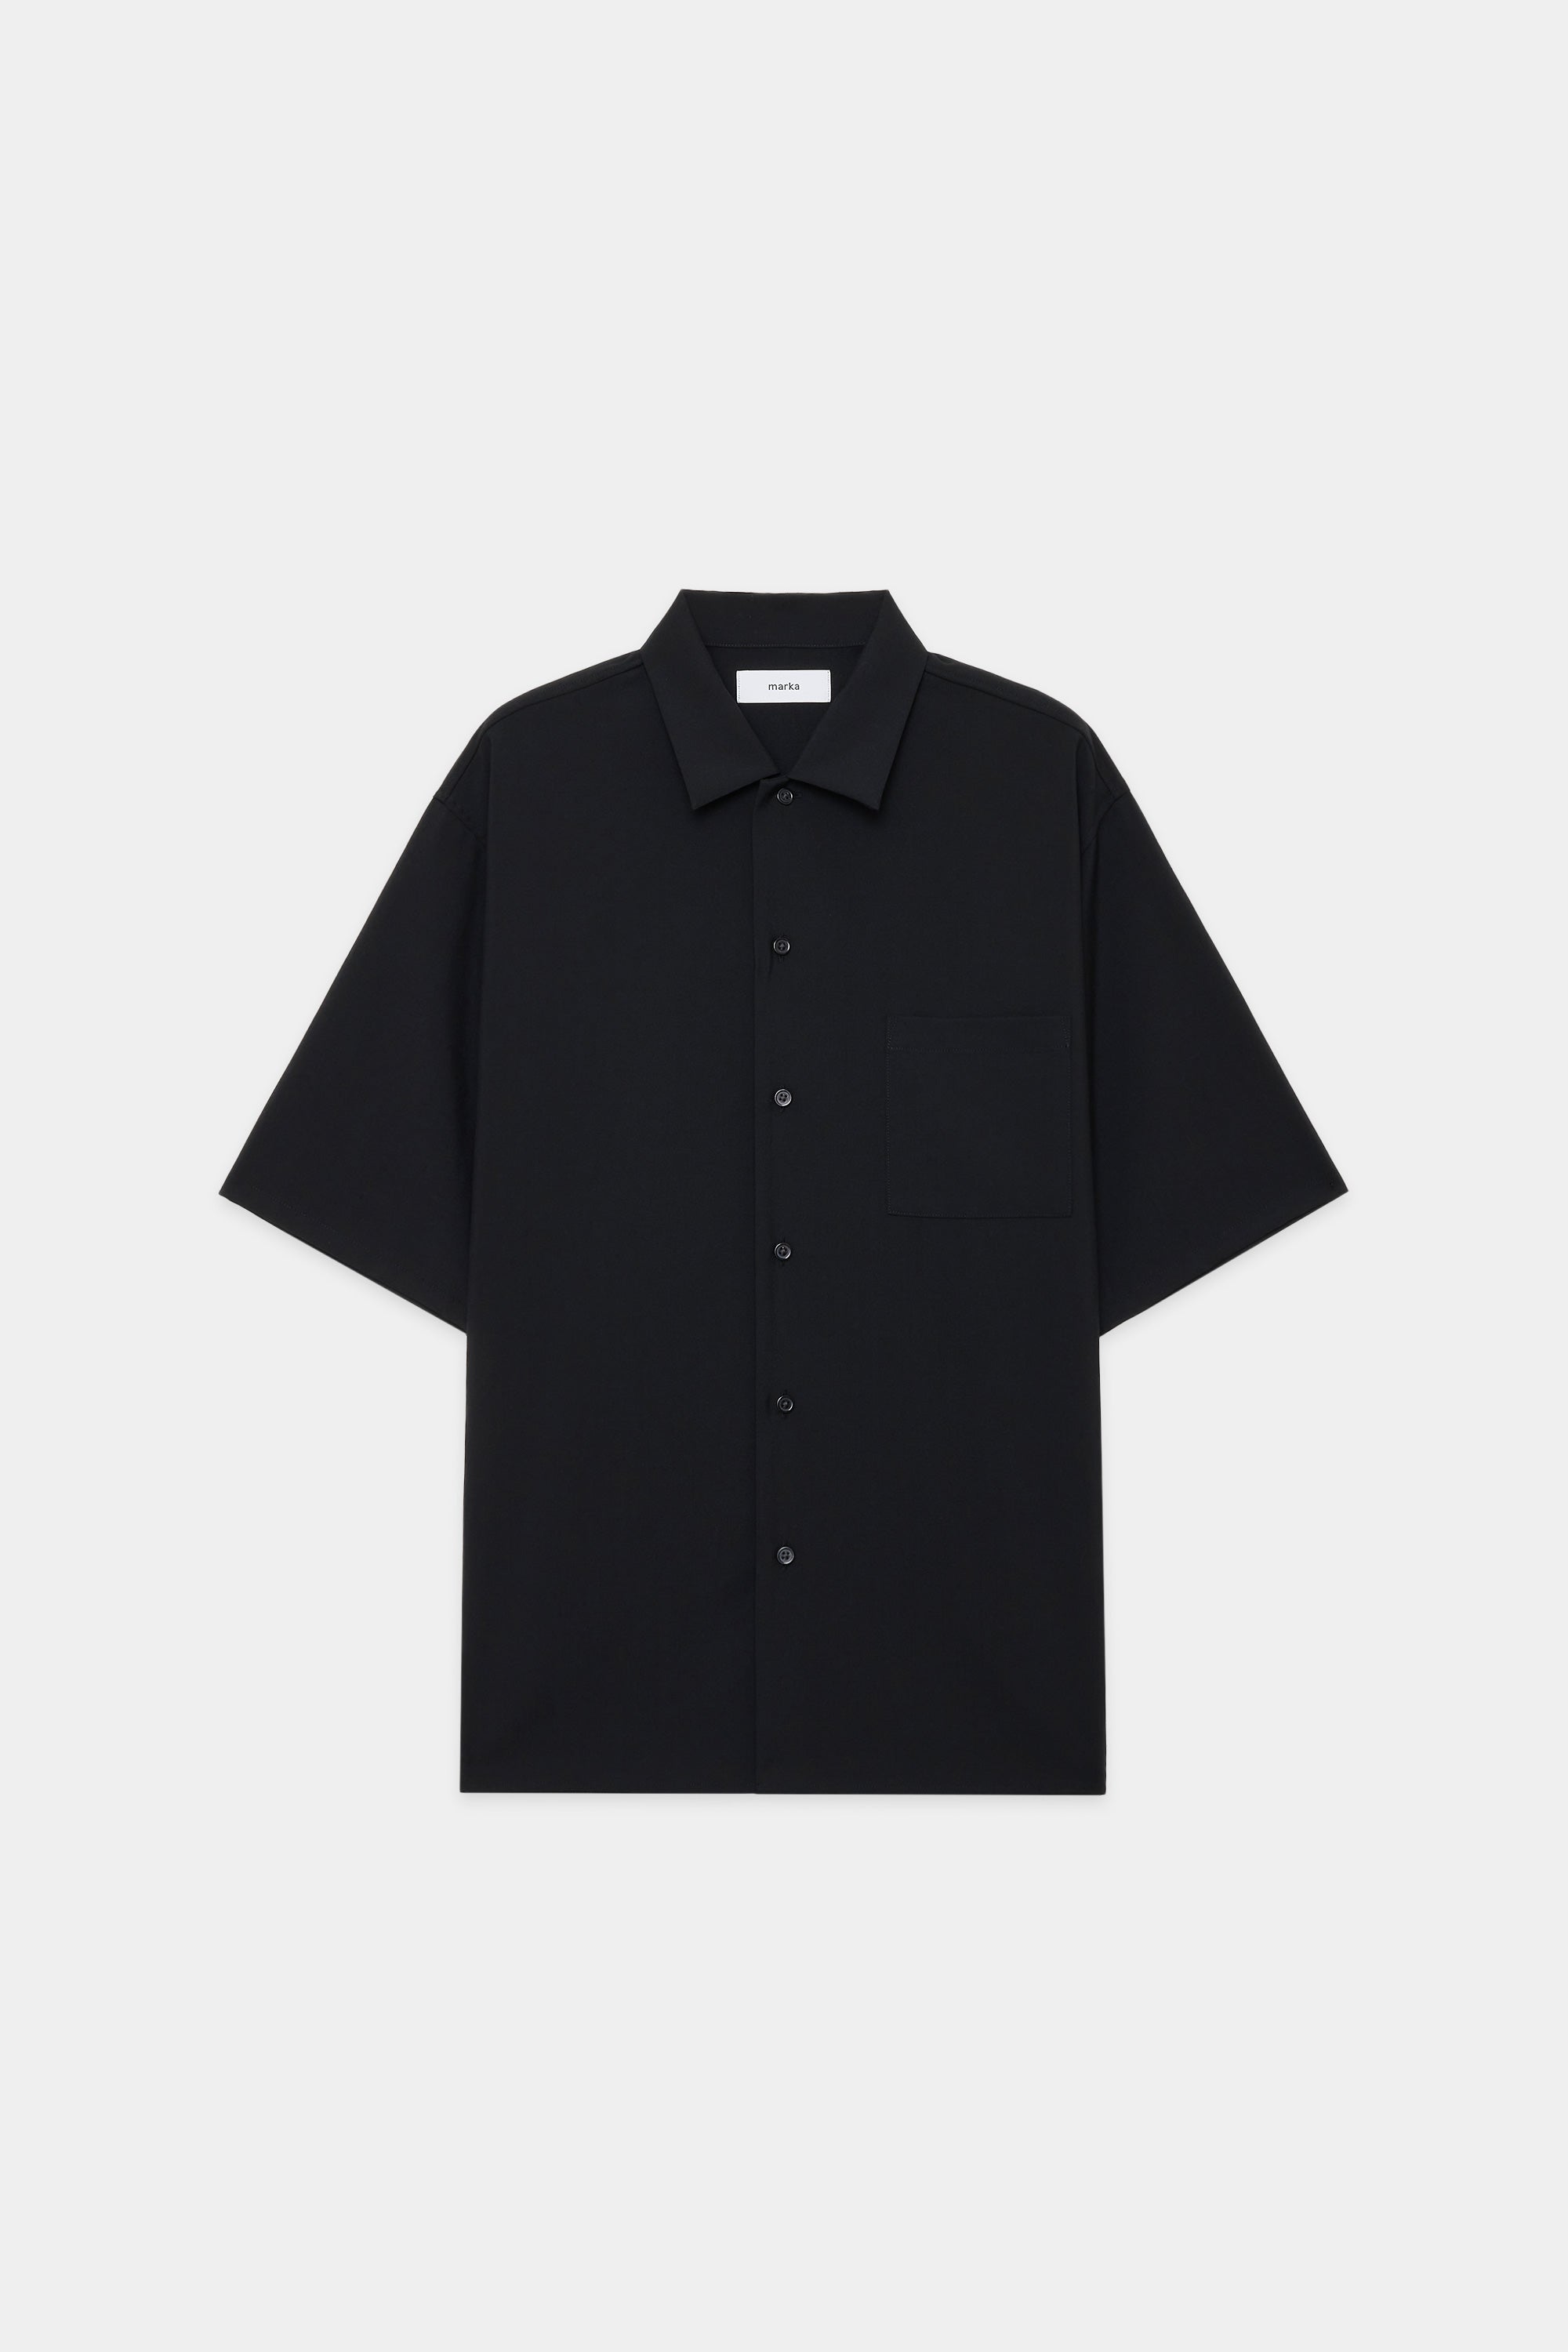 ウールトロ ワッシャータンブラー / オープンカラーシャツ S/S, Black